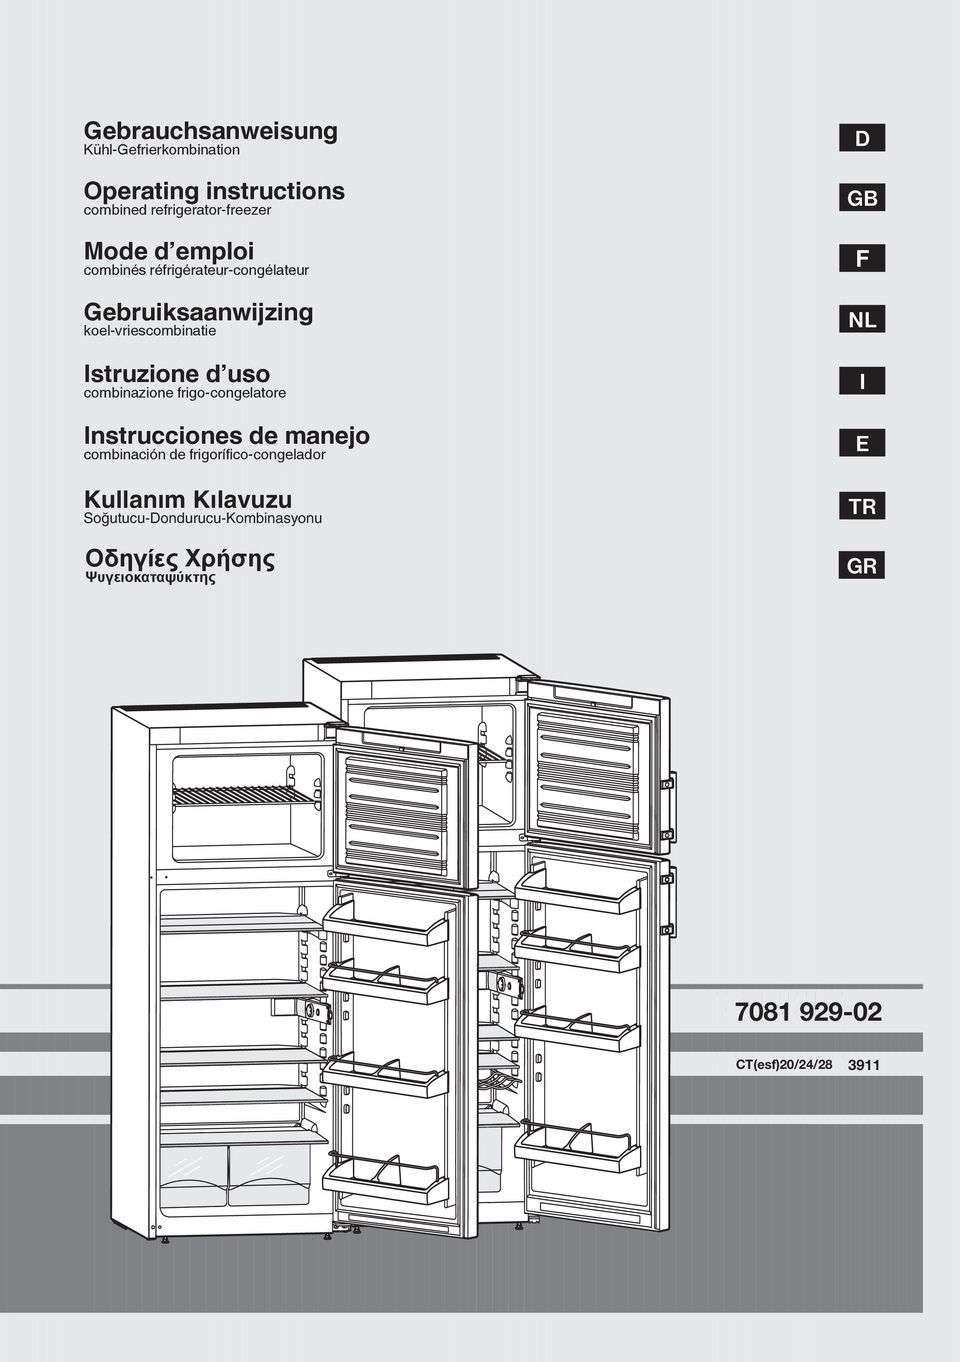 frigo-congelatore Instrucciones de manejo combinación de frigorífico-congelador Kullaným Kýlavuzu